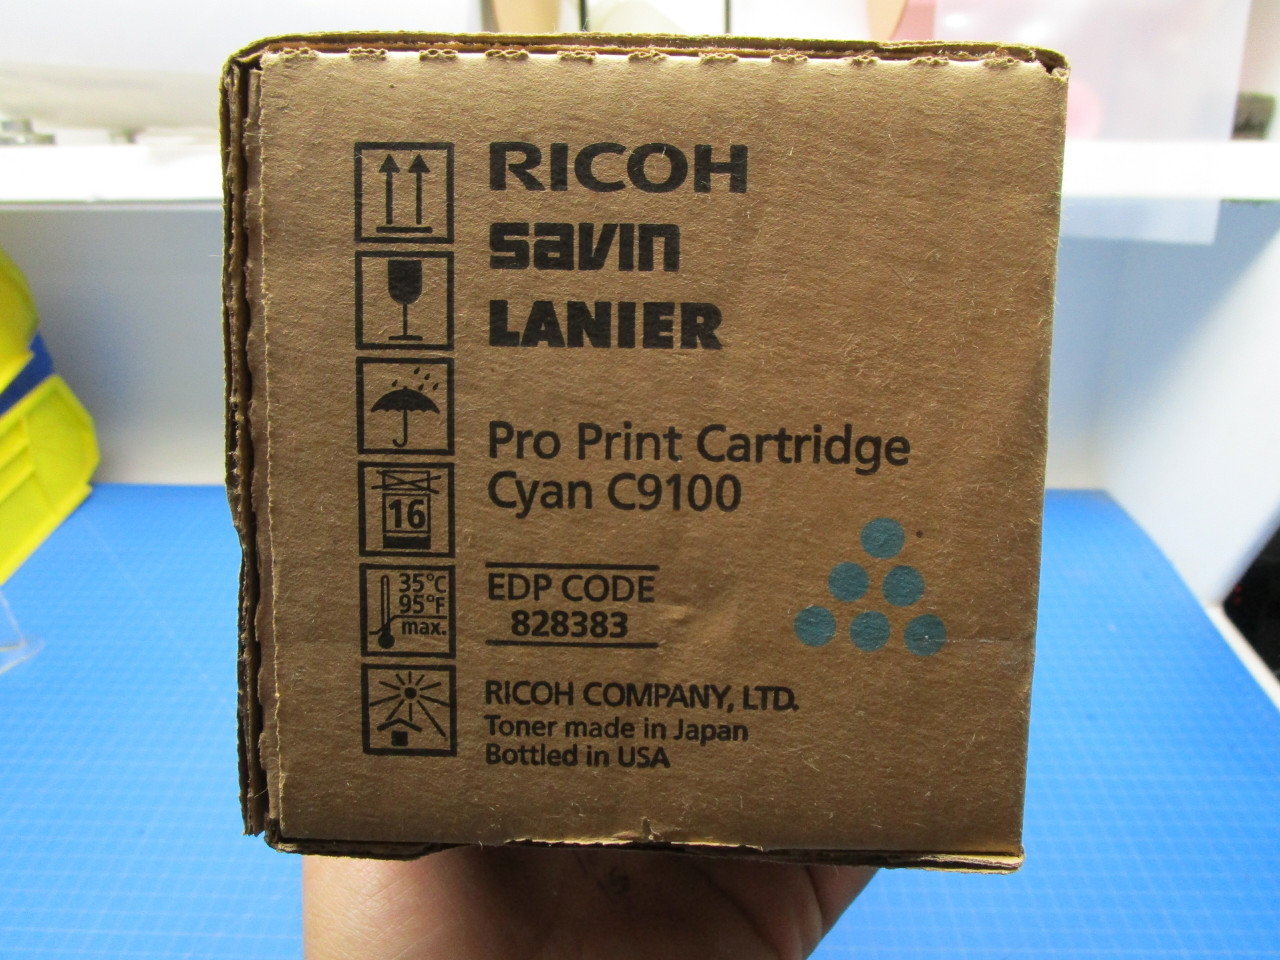 Ricoh Savin Lanier C9100 Cyan Pro Print Cartridge 828383 P02-000919